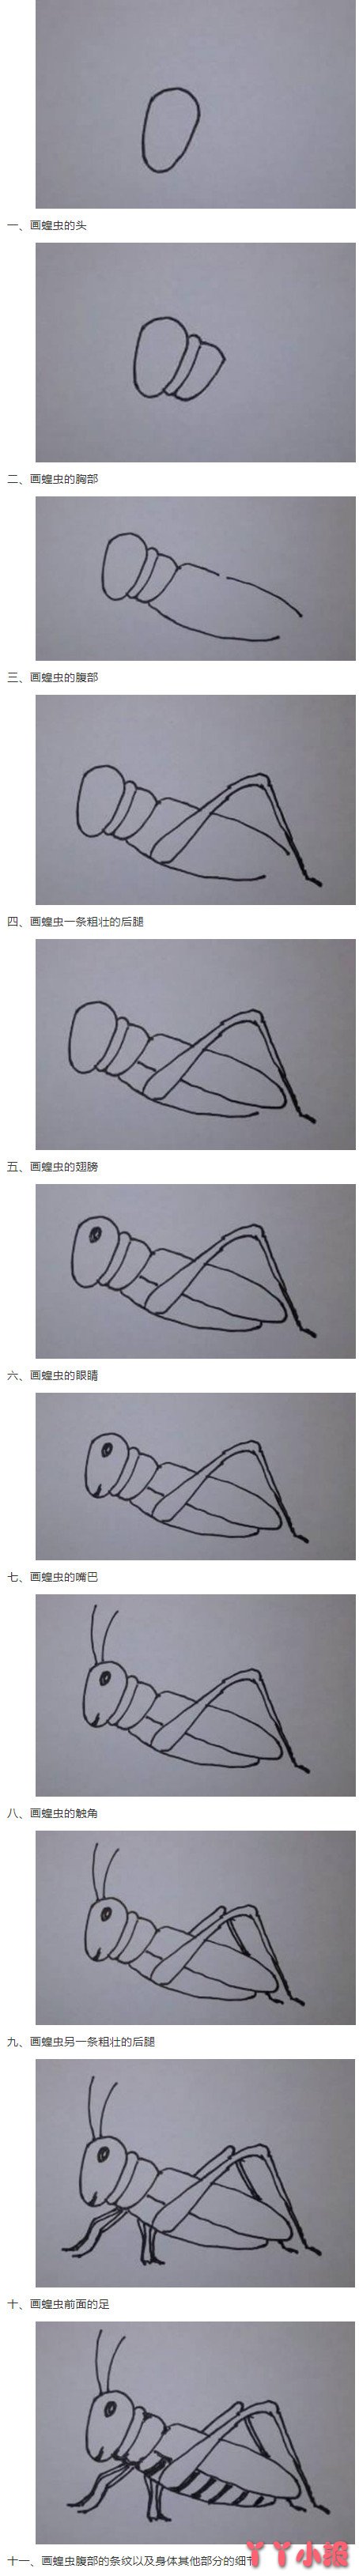 蝗虫蚂蚱怎么画带步骤图 蝗虫简笔画图片